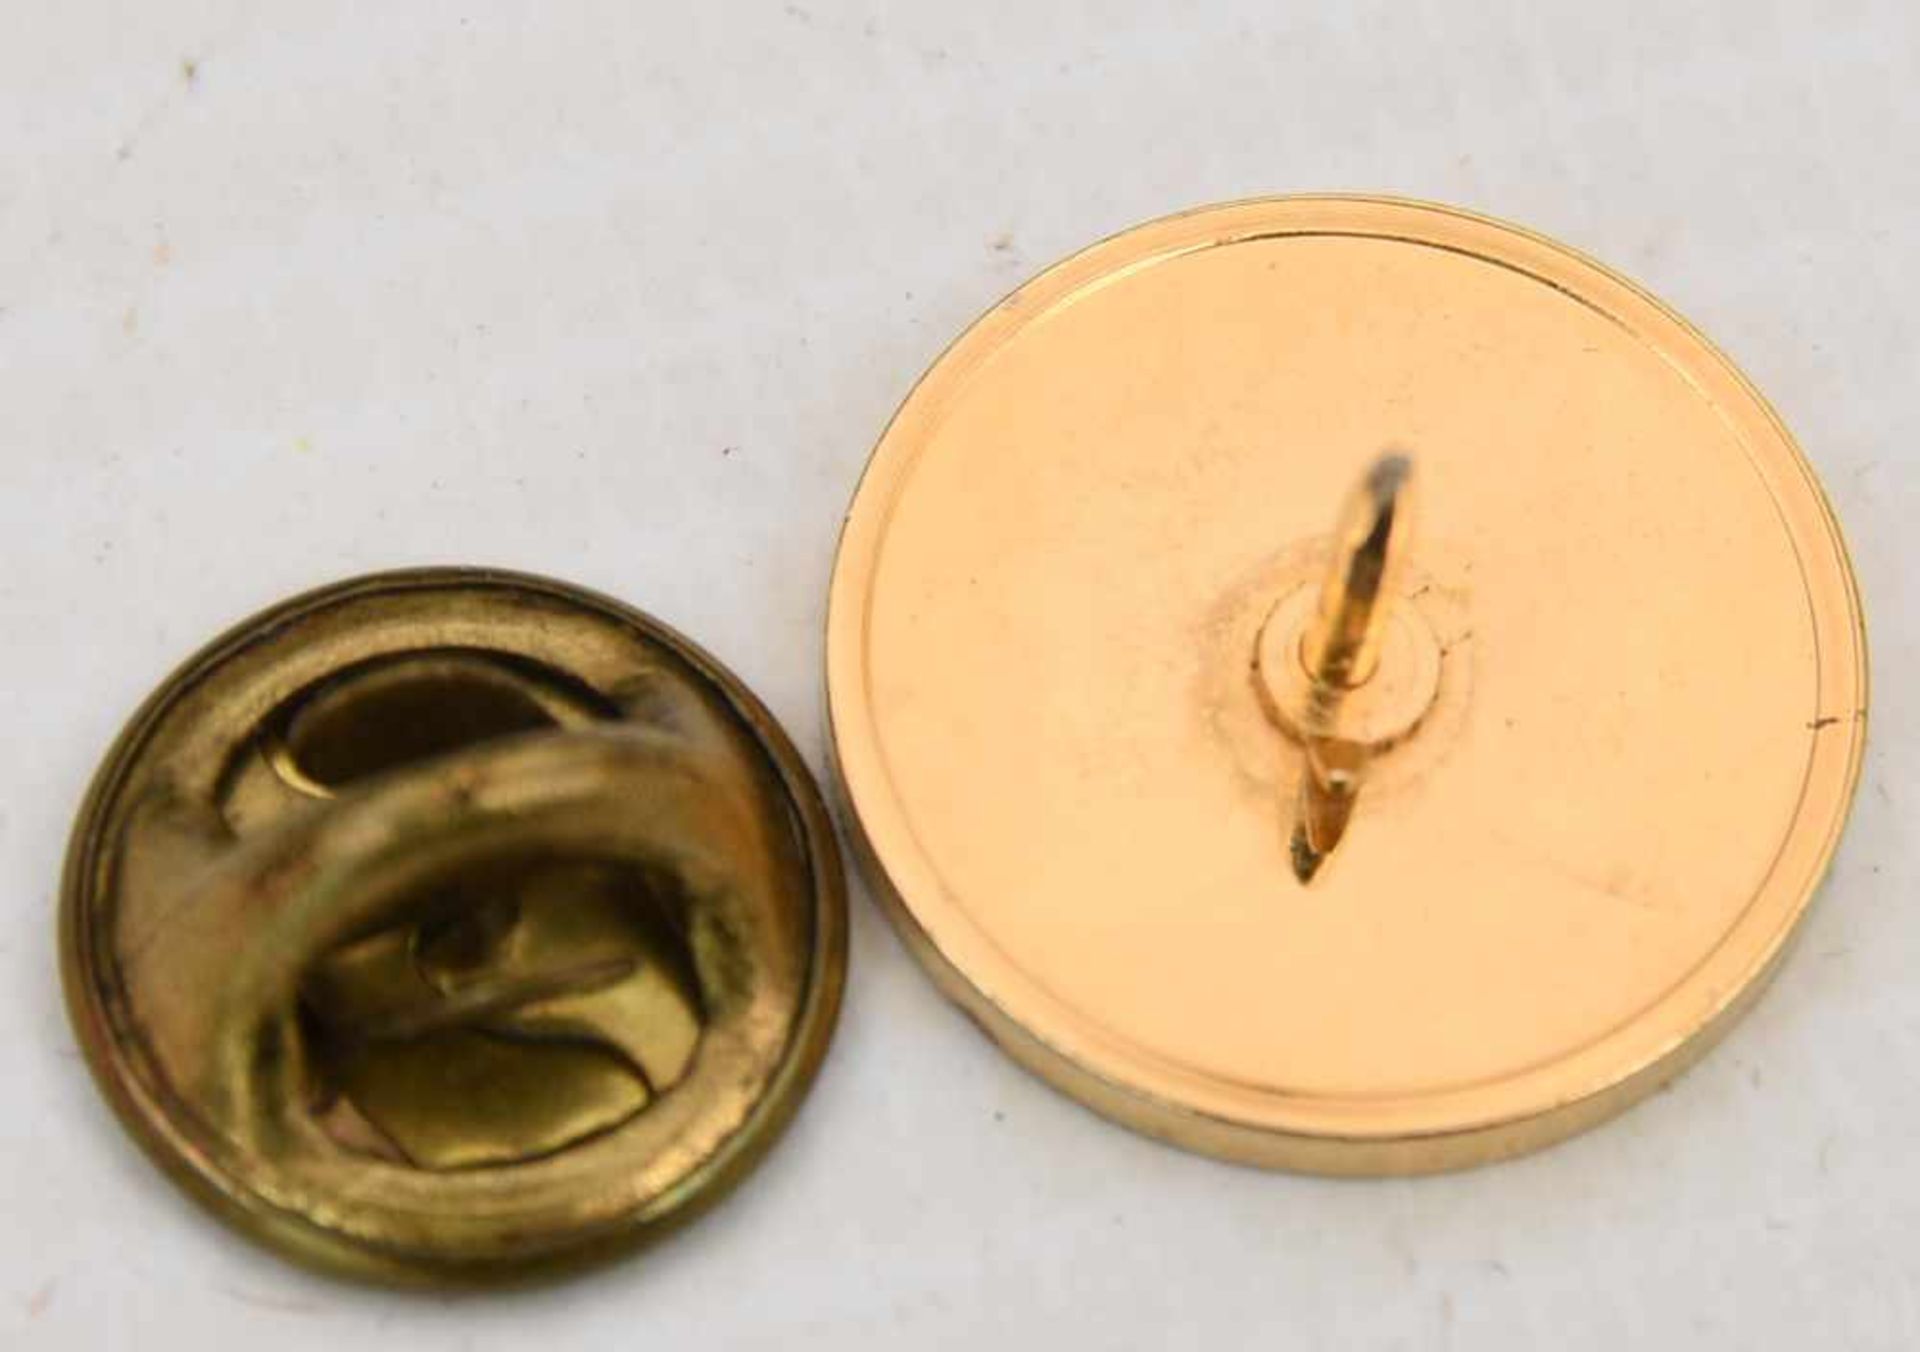 MÜNZANHÄNGER, Die kleinsten Goldmünzen der Welt, mit 14 Karat Kette, 20. Jhd. (13) 1x Münzanhänger - Bild 4 aus 6